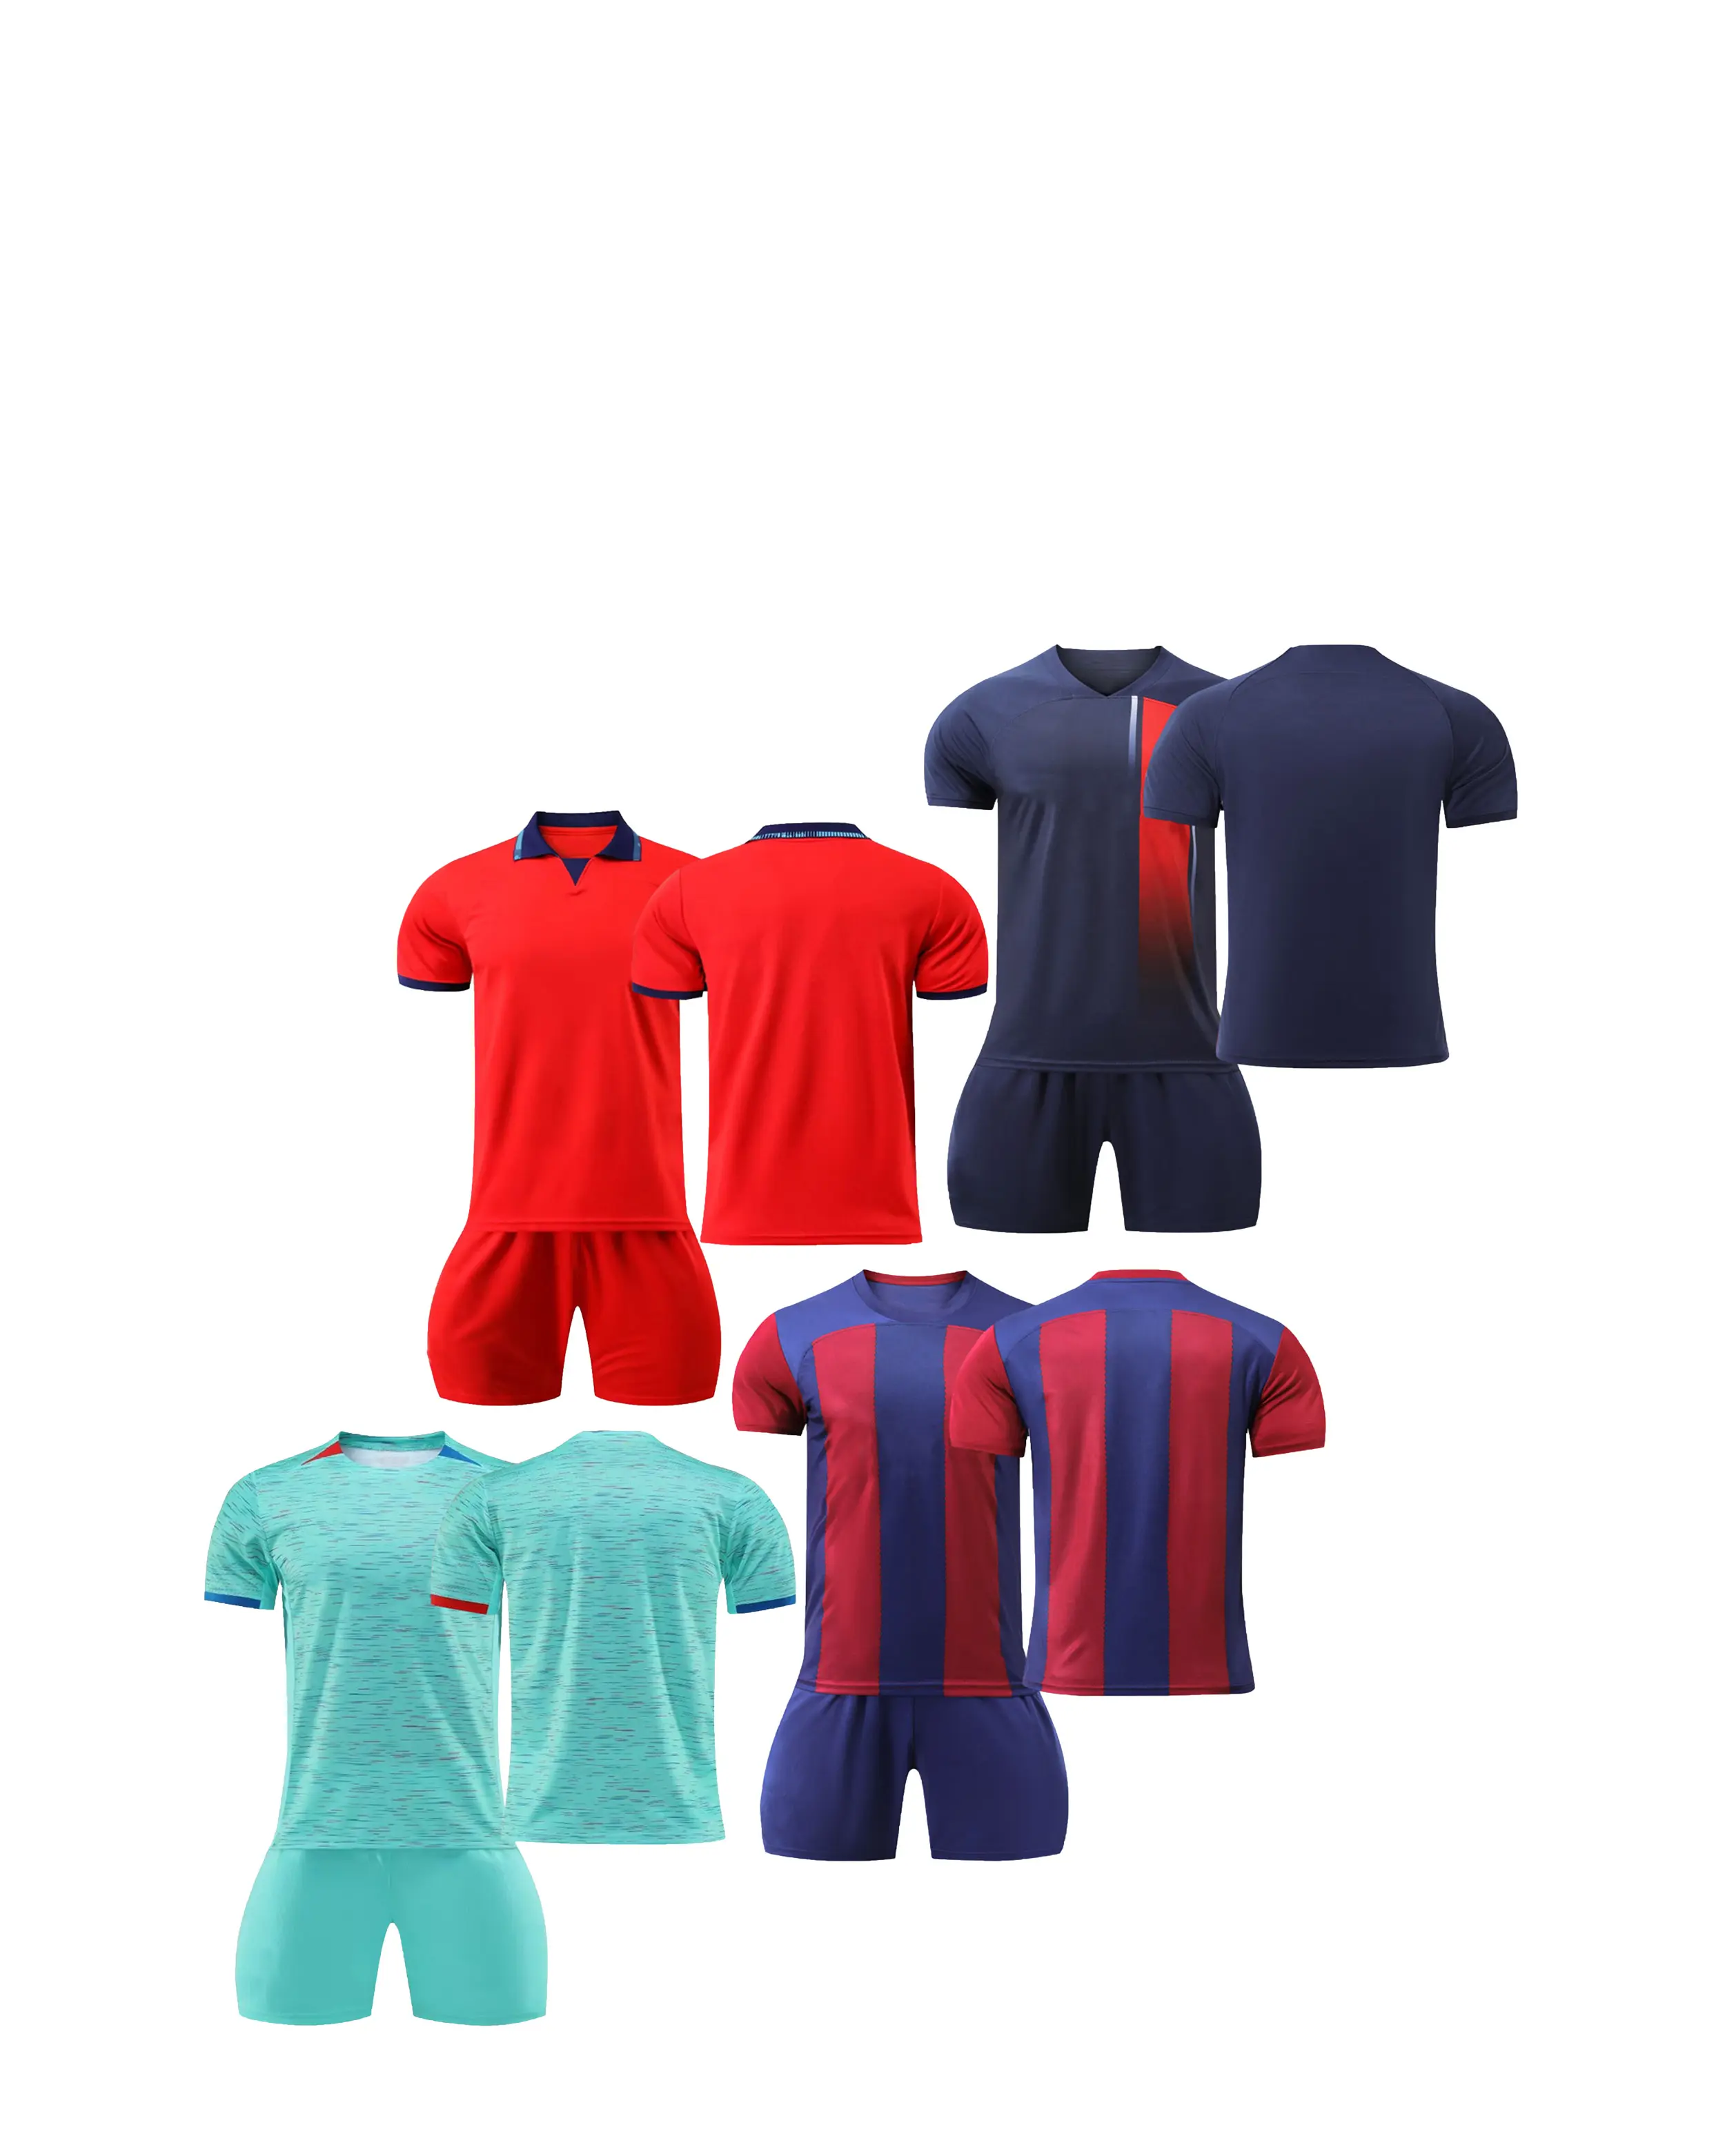 24-25 Conjunto de traje de fútbol Placa ligera Transpirable Secado rápido Niños Adultos Impresión Entrenamiento Partido Jersey